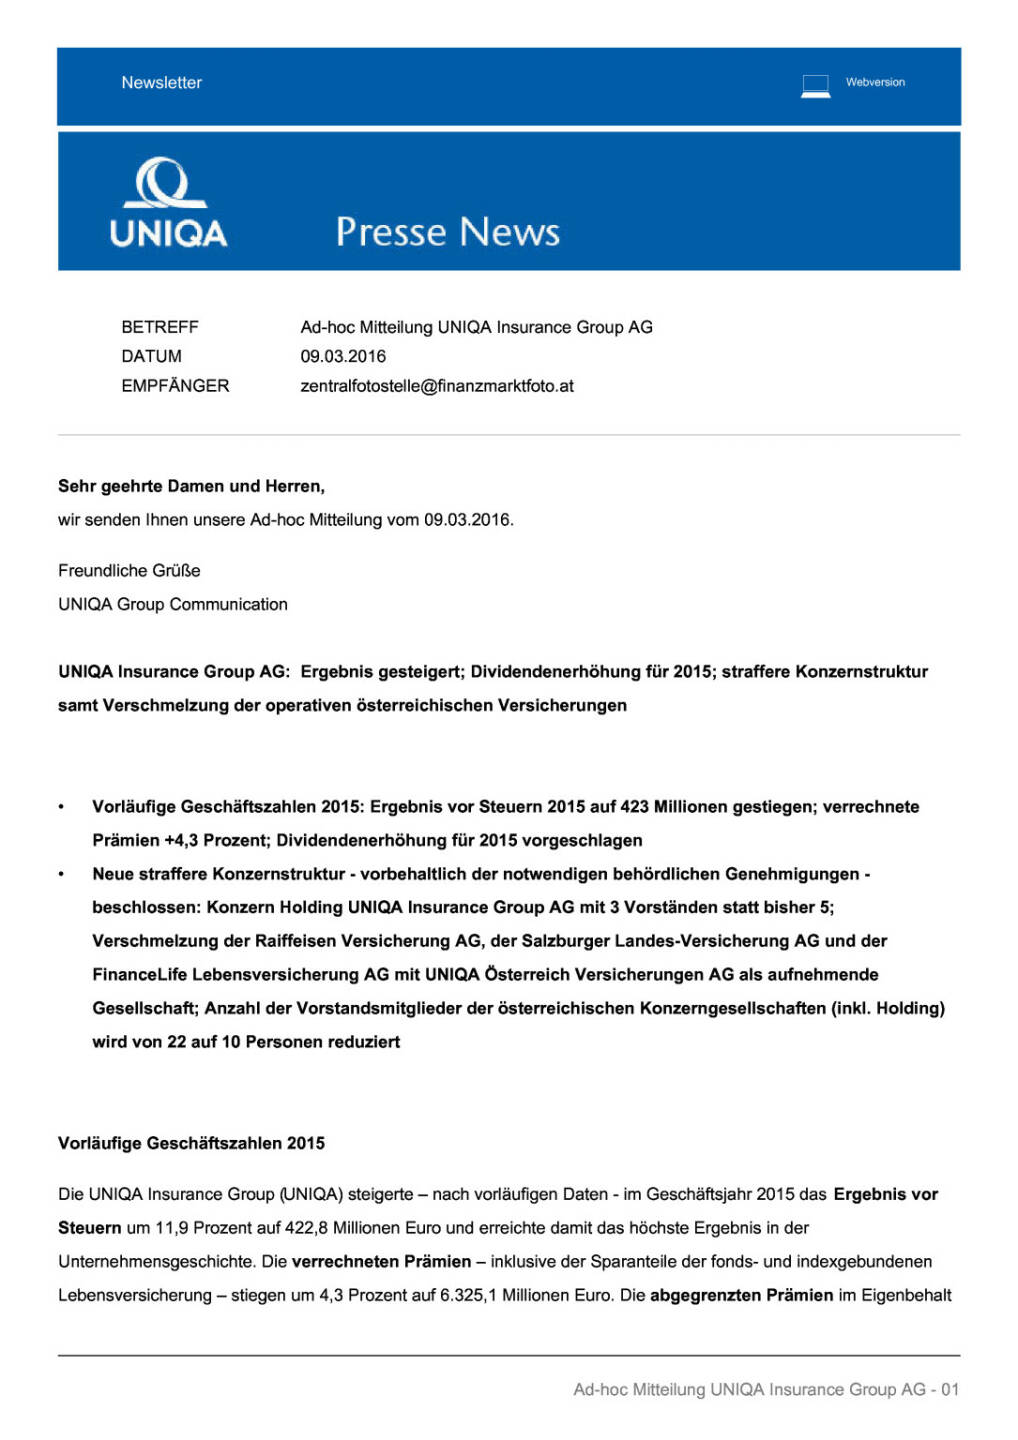 Uniqa: Vorläufige Geschäftszahlen 2015, Seite 1/4, komplettes Dokument unter http://boerse-social.com/static/uploads/file_756_uniqa_vorlaufige_geschaftszahlen_2015.pdf